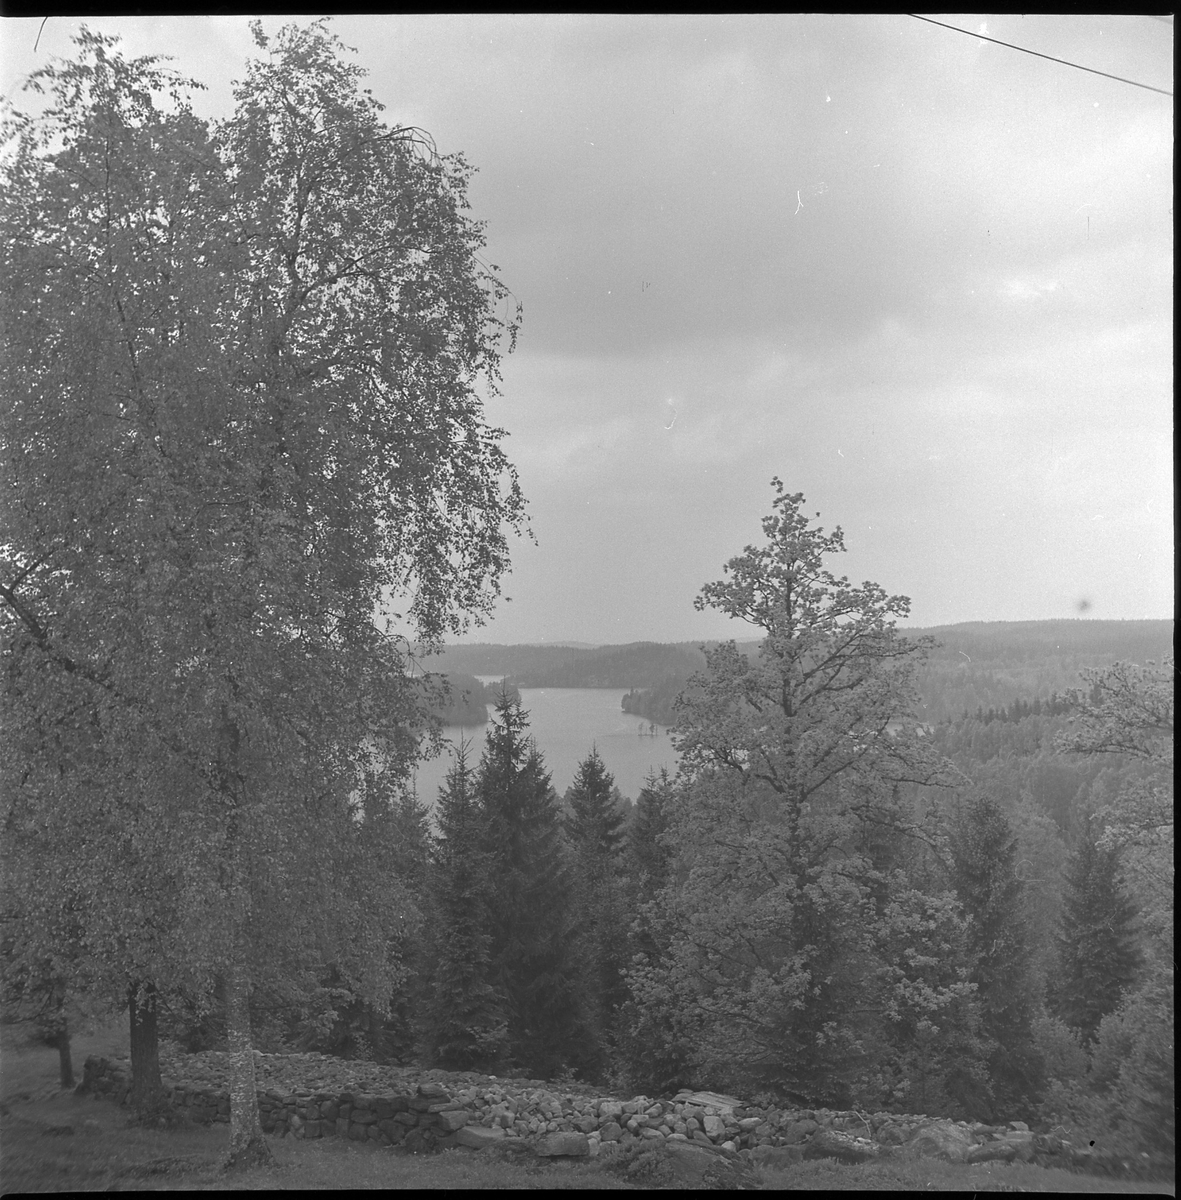 Vy från Ödenäs mot sjön Ömmern. 21 maj 1950